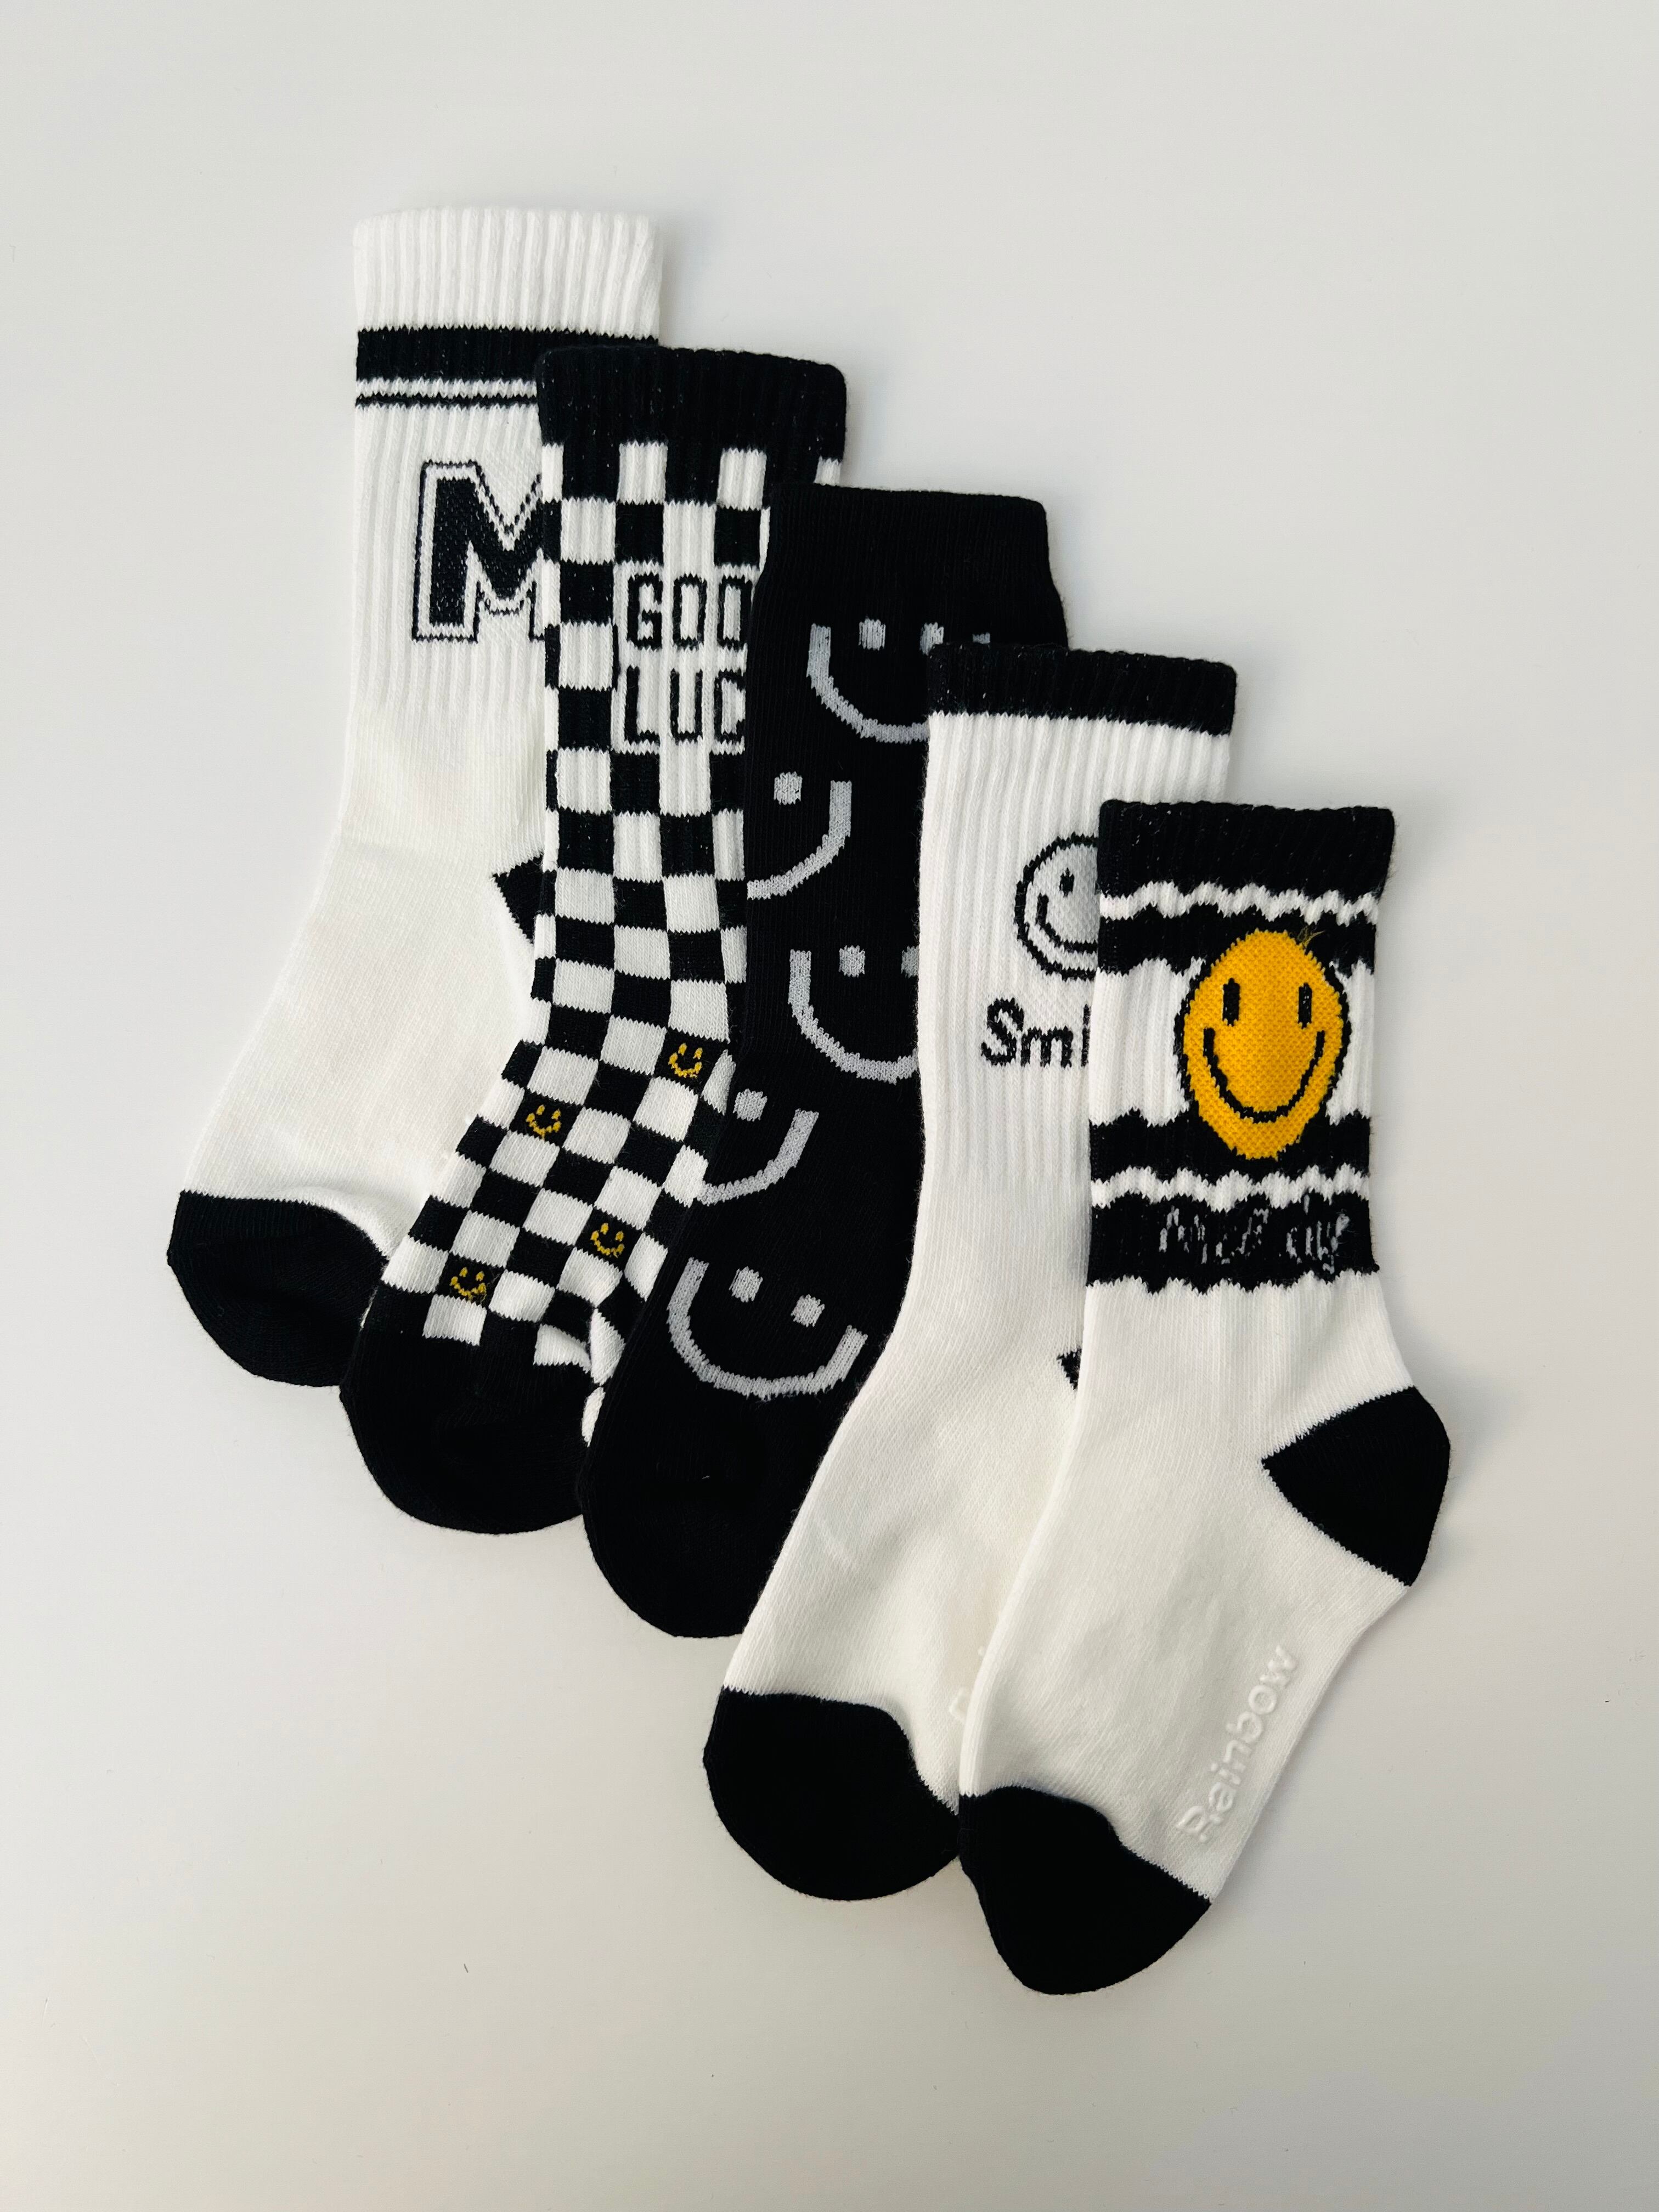 モノクロニコちゃん socks 5set（12〜22cm）3487